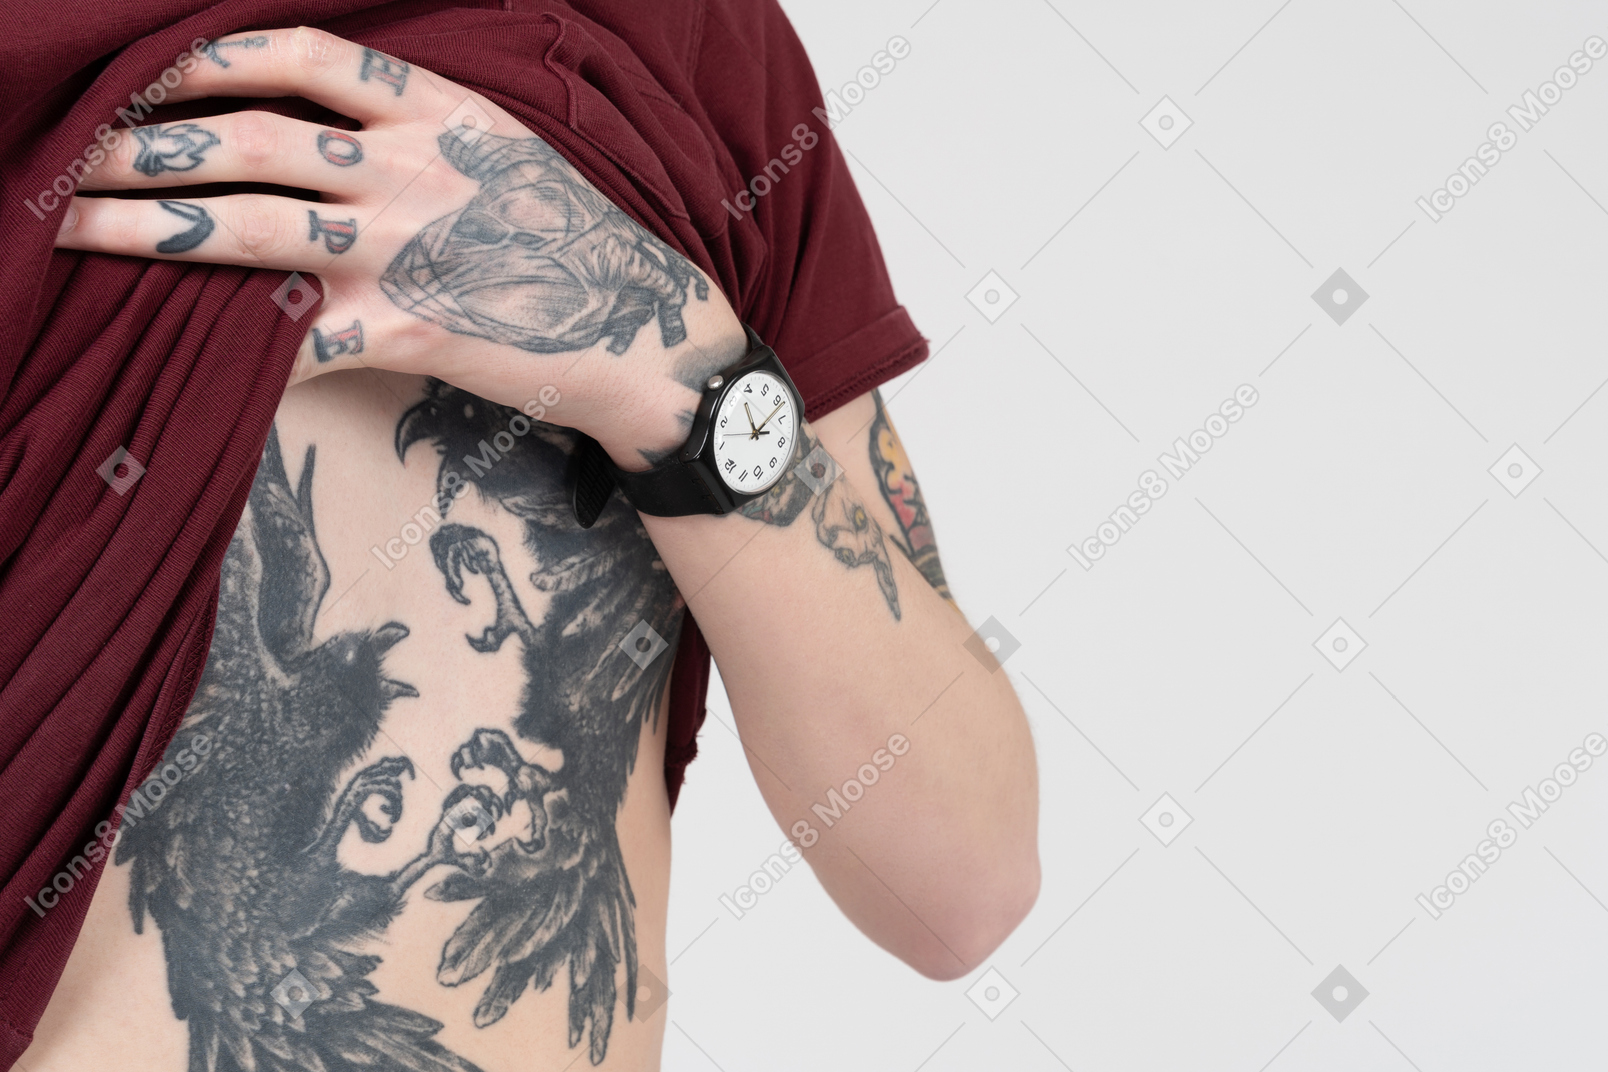 Dimostrando addome tatuato